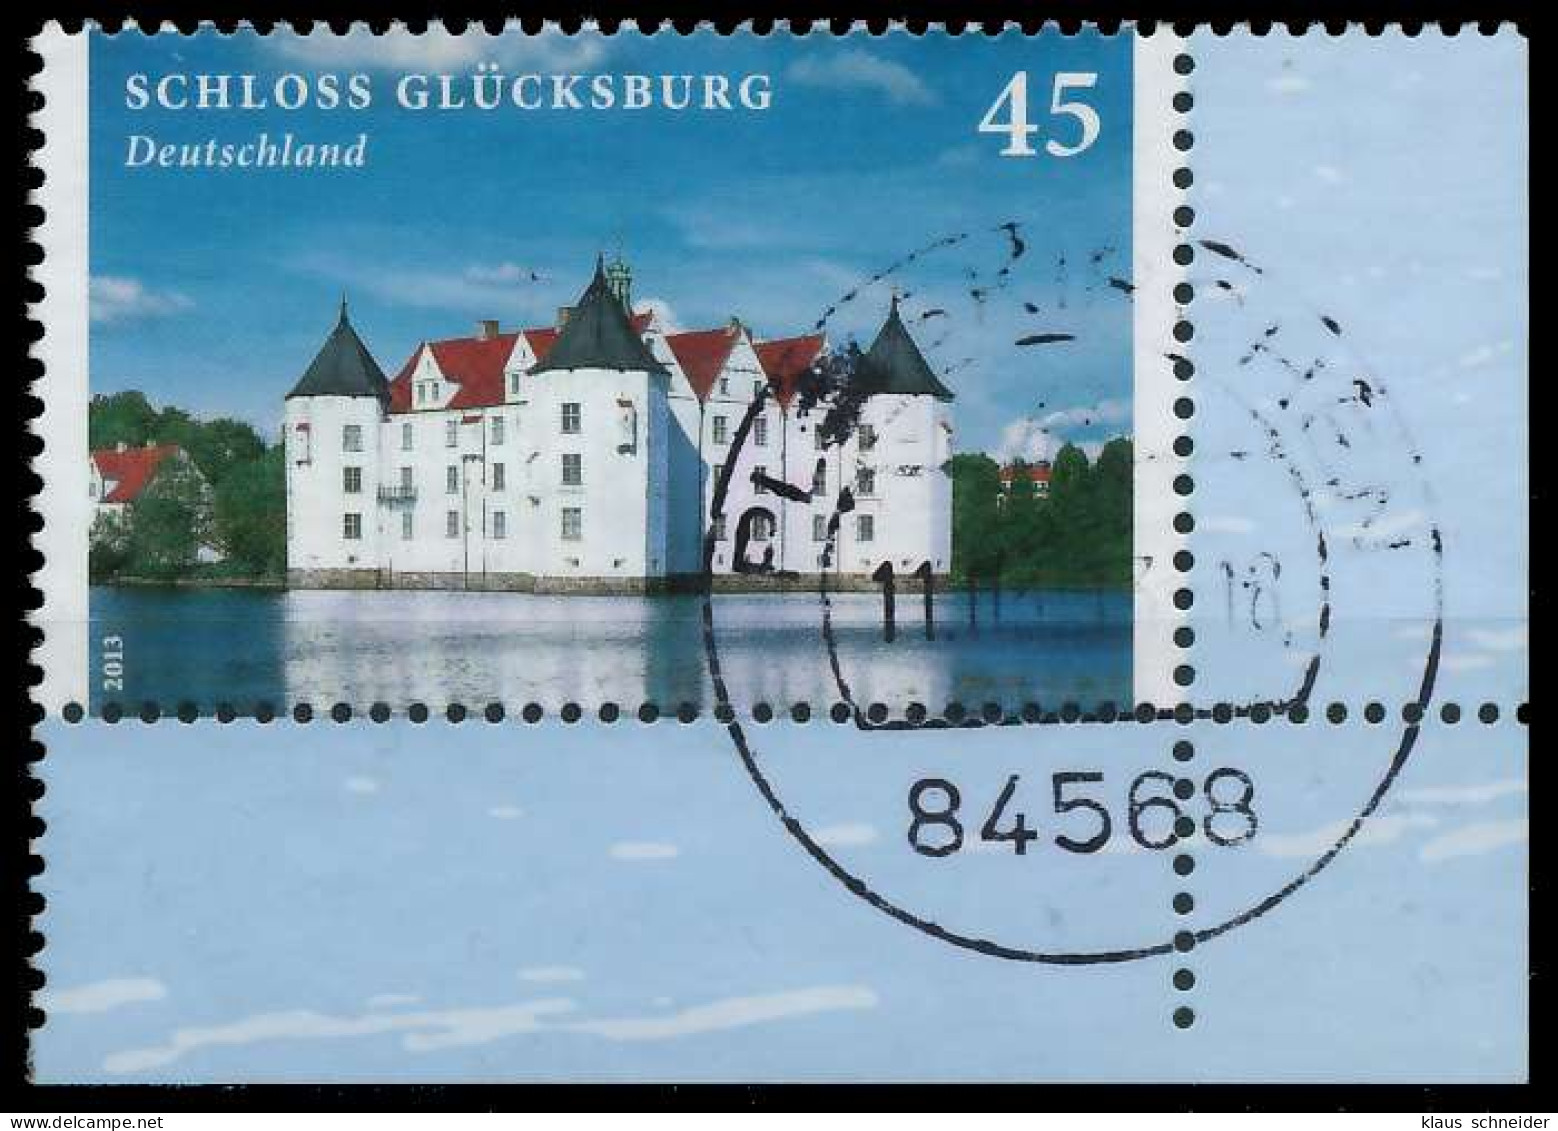 BRD BUND 2013 Nr 2972 Zentrisch Gestempelt ECKE-URE X32629A - Used Stamps